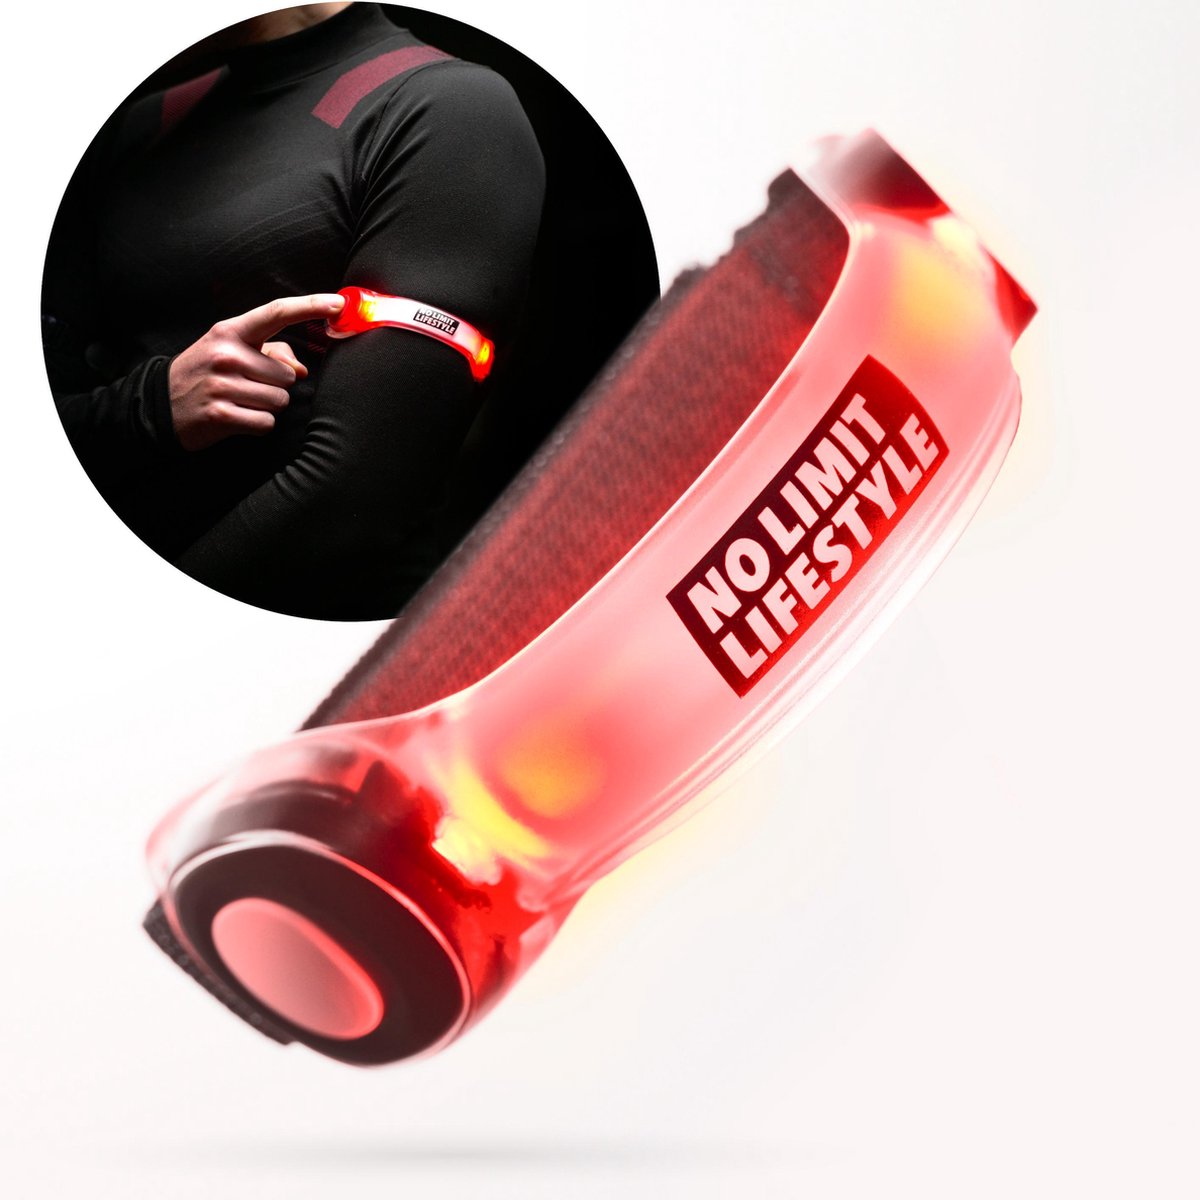 Hardloop Verlichting - Hardloopverlichting - Hardloop Lampjes - Rood - LED armband - LED armband hardlopen